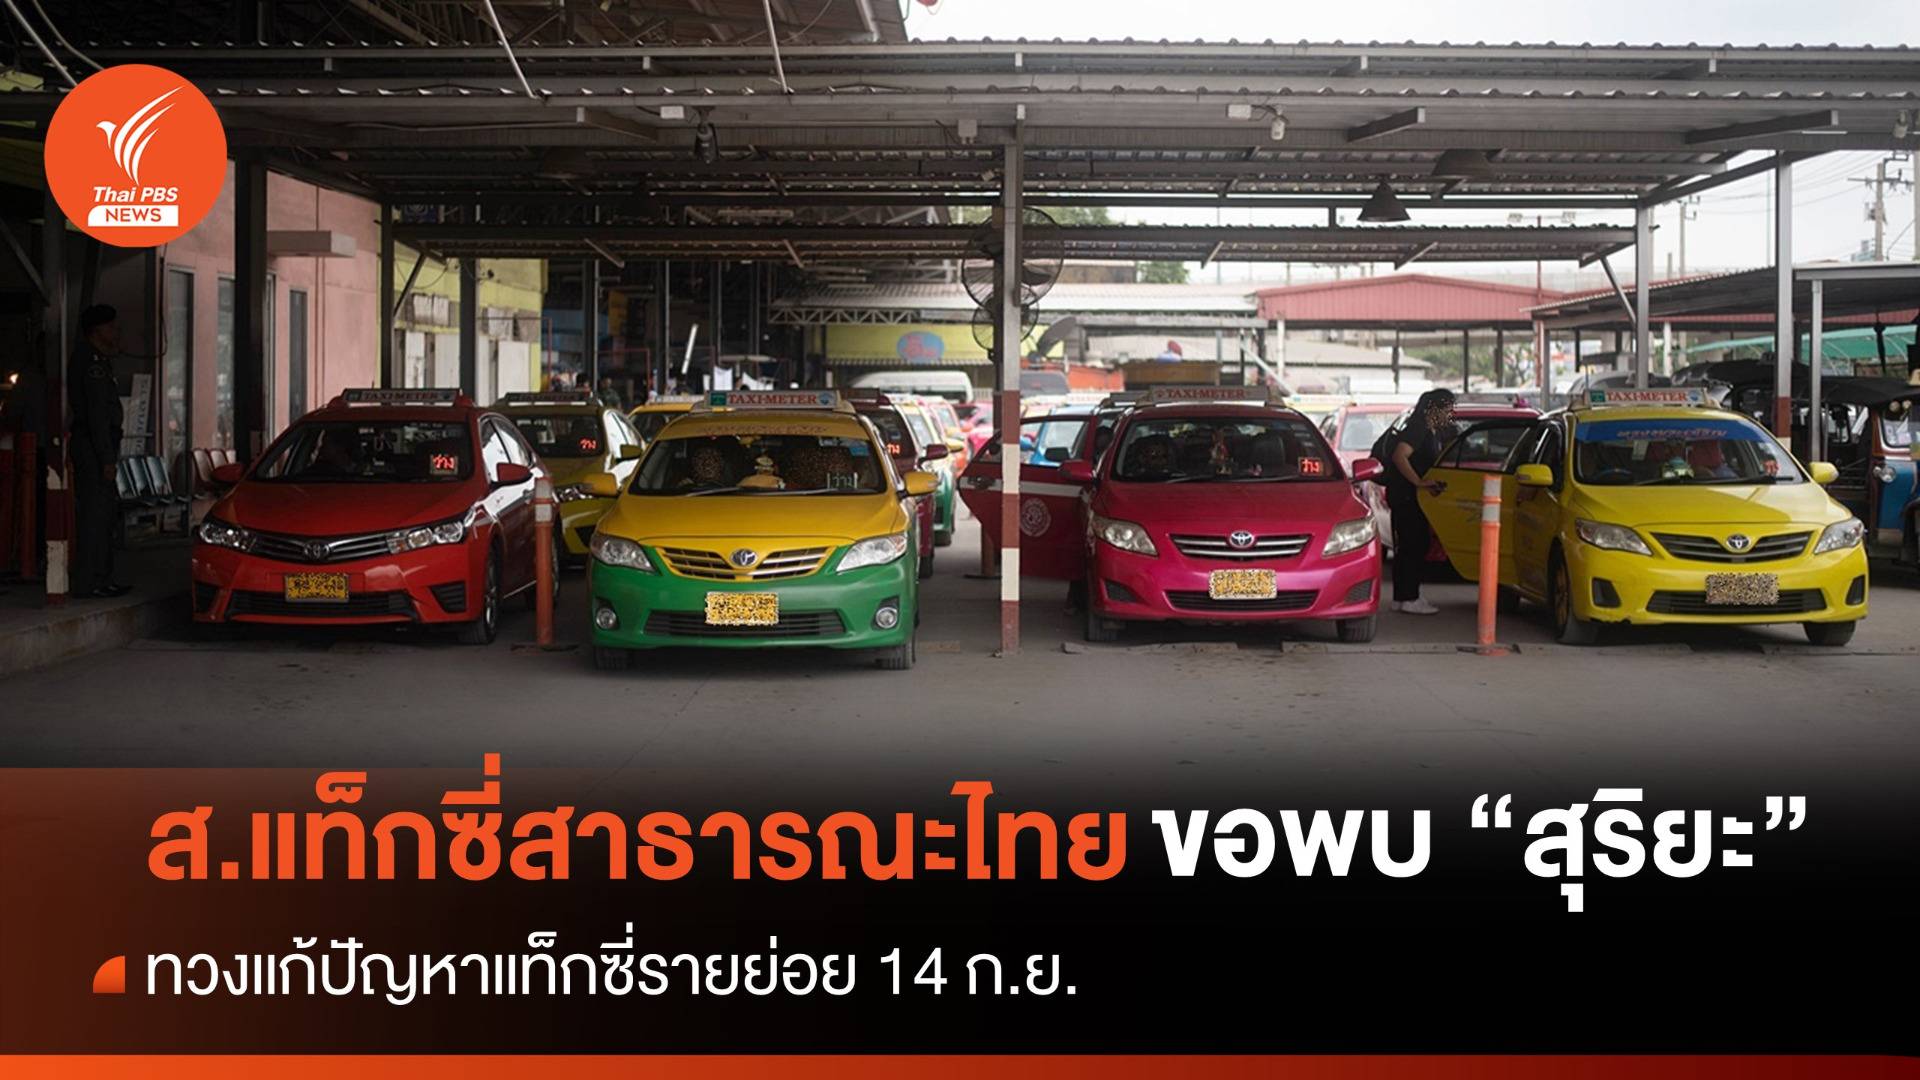 ส.แท็กซี่สาธารณะไทยจ่อพบ "สุริยะ" ทวงแก้ปัญหาแท็กซี่รายย่อย